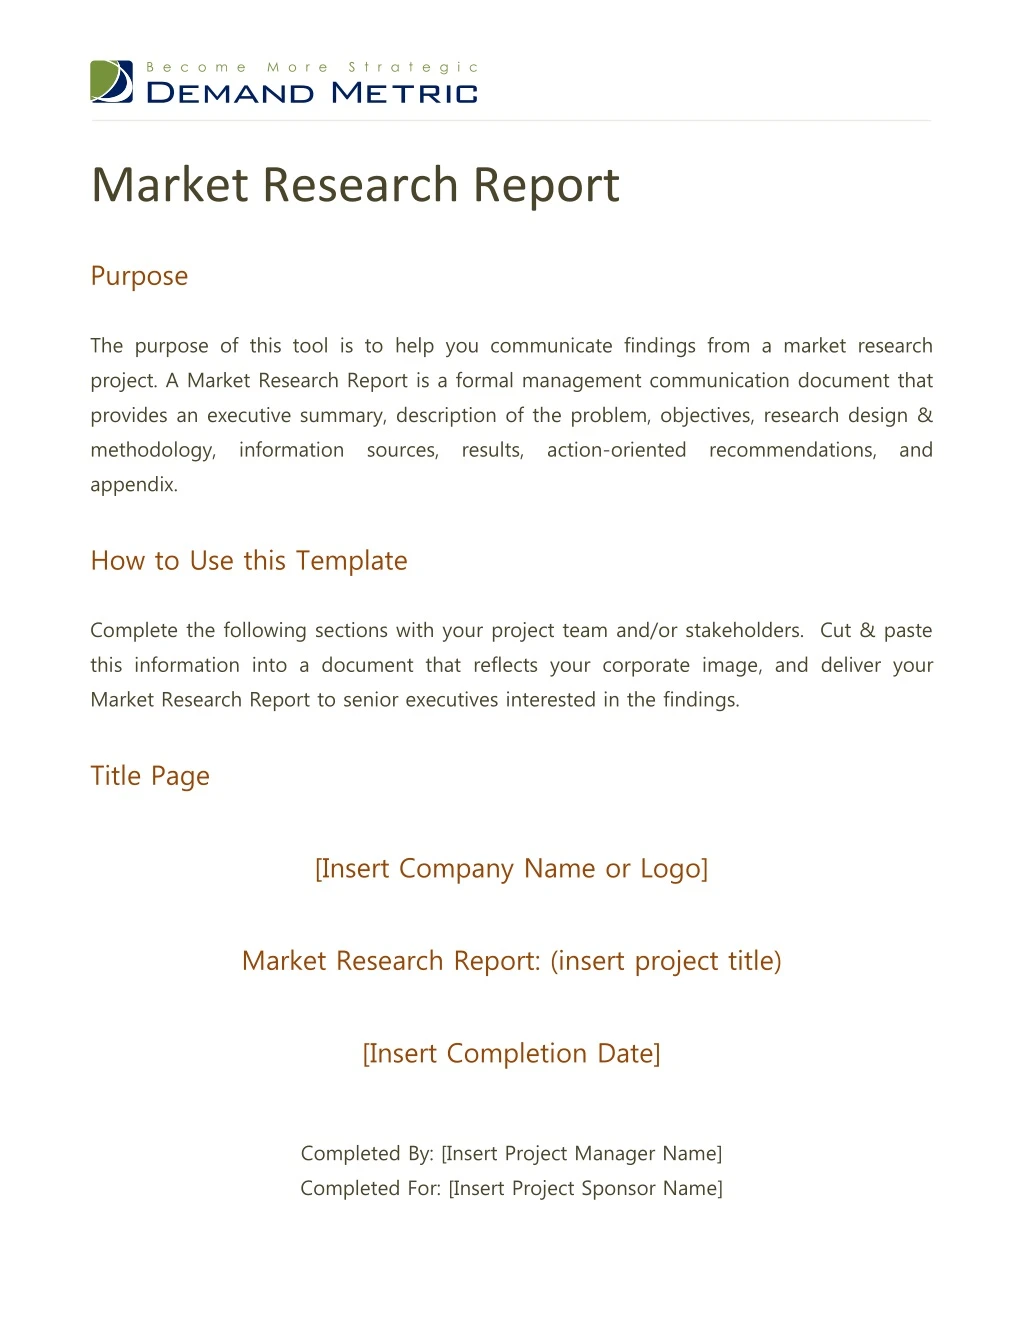 market research report purpose the purpose